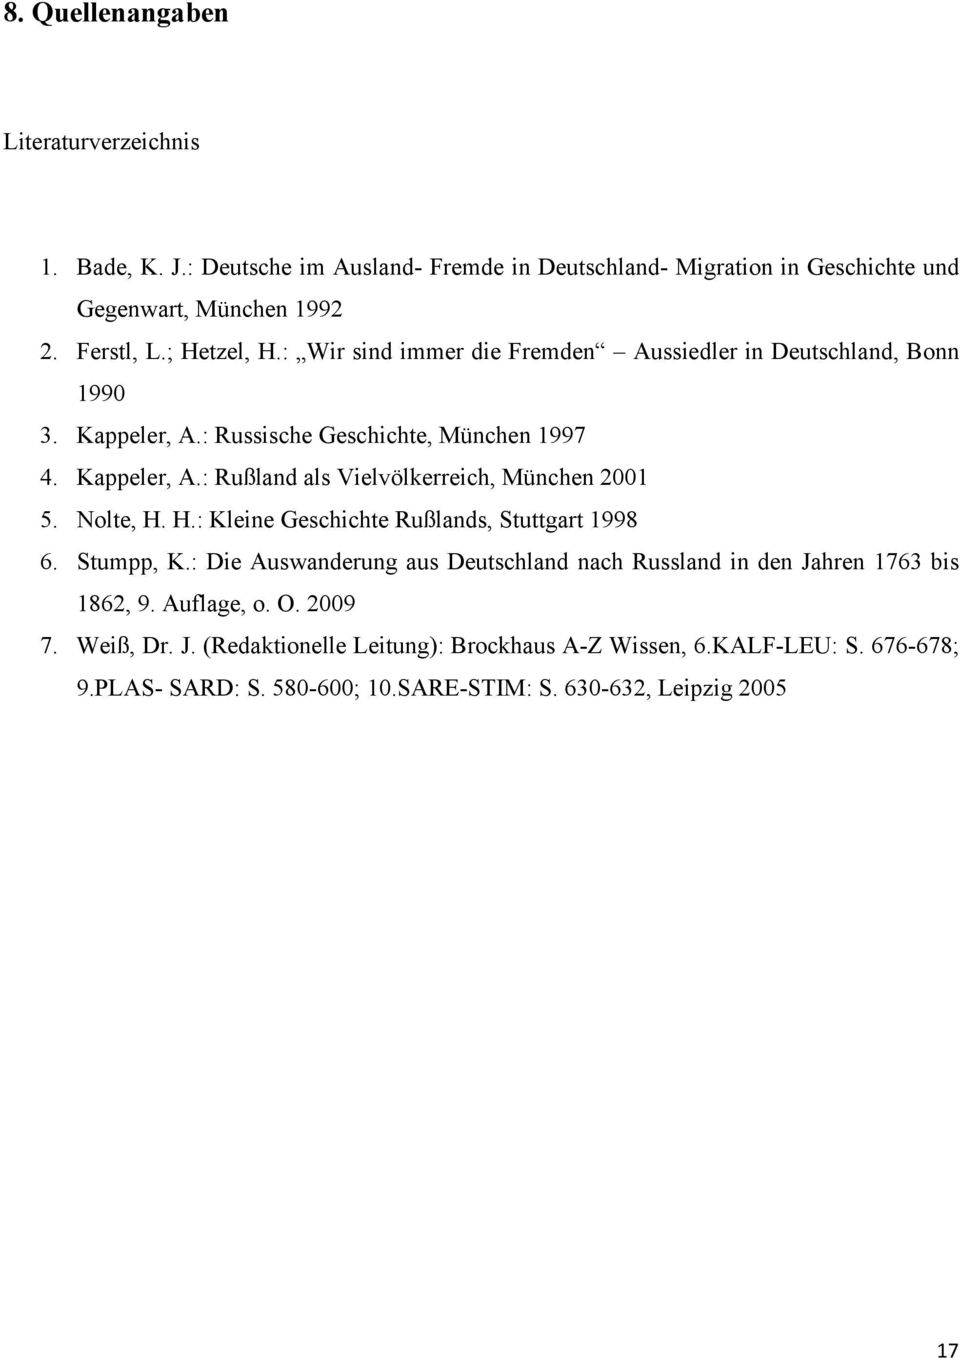 Nolte, H. H.: Kleine Geschichte Rußlands, Stuttgart 1998 6. Stumpp, K.: Die Auswanderung aus Deutschland nach Russland in den Jahren 1763 bis 1862, 9. Auflage, o. O.